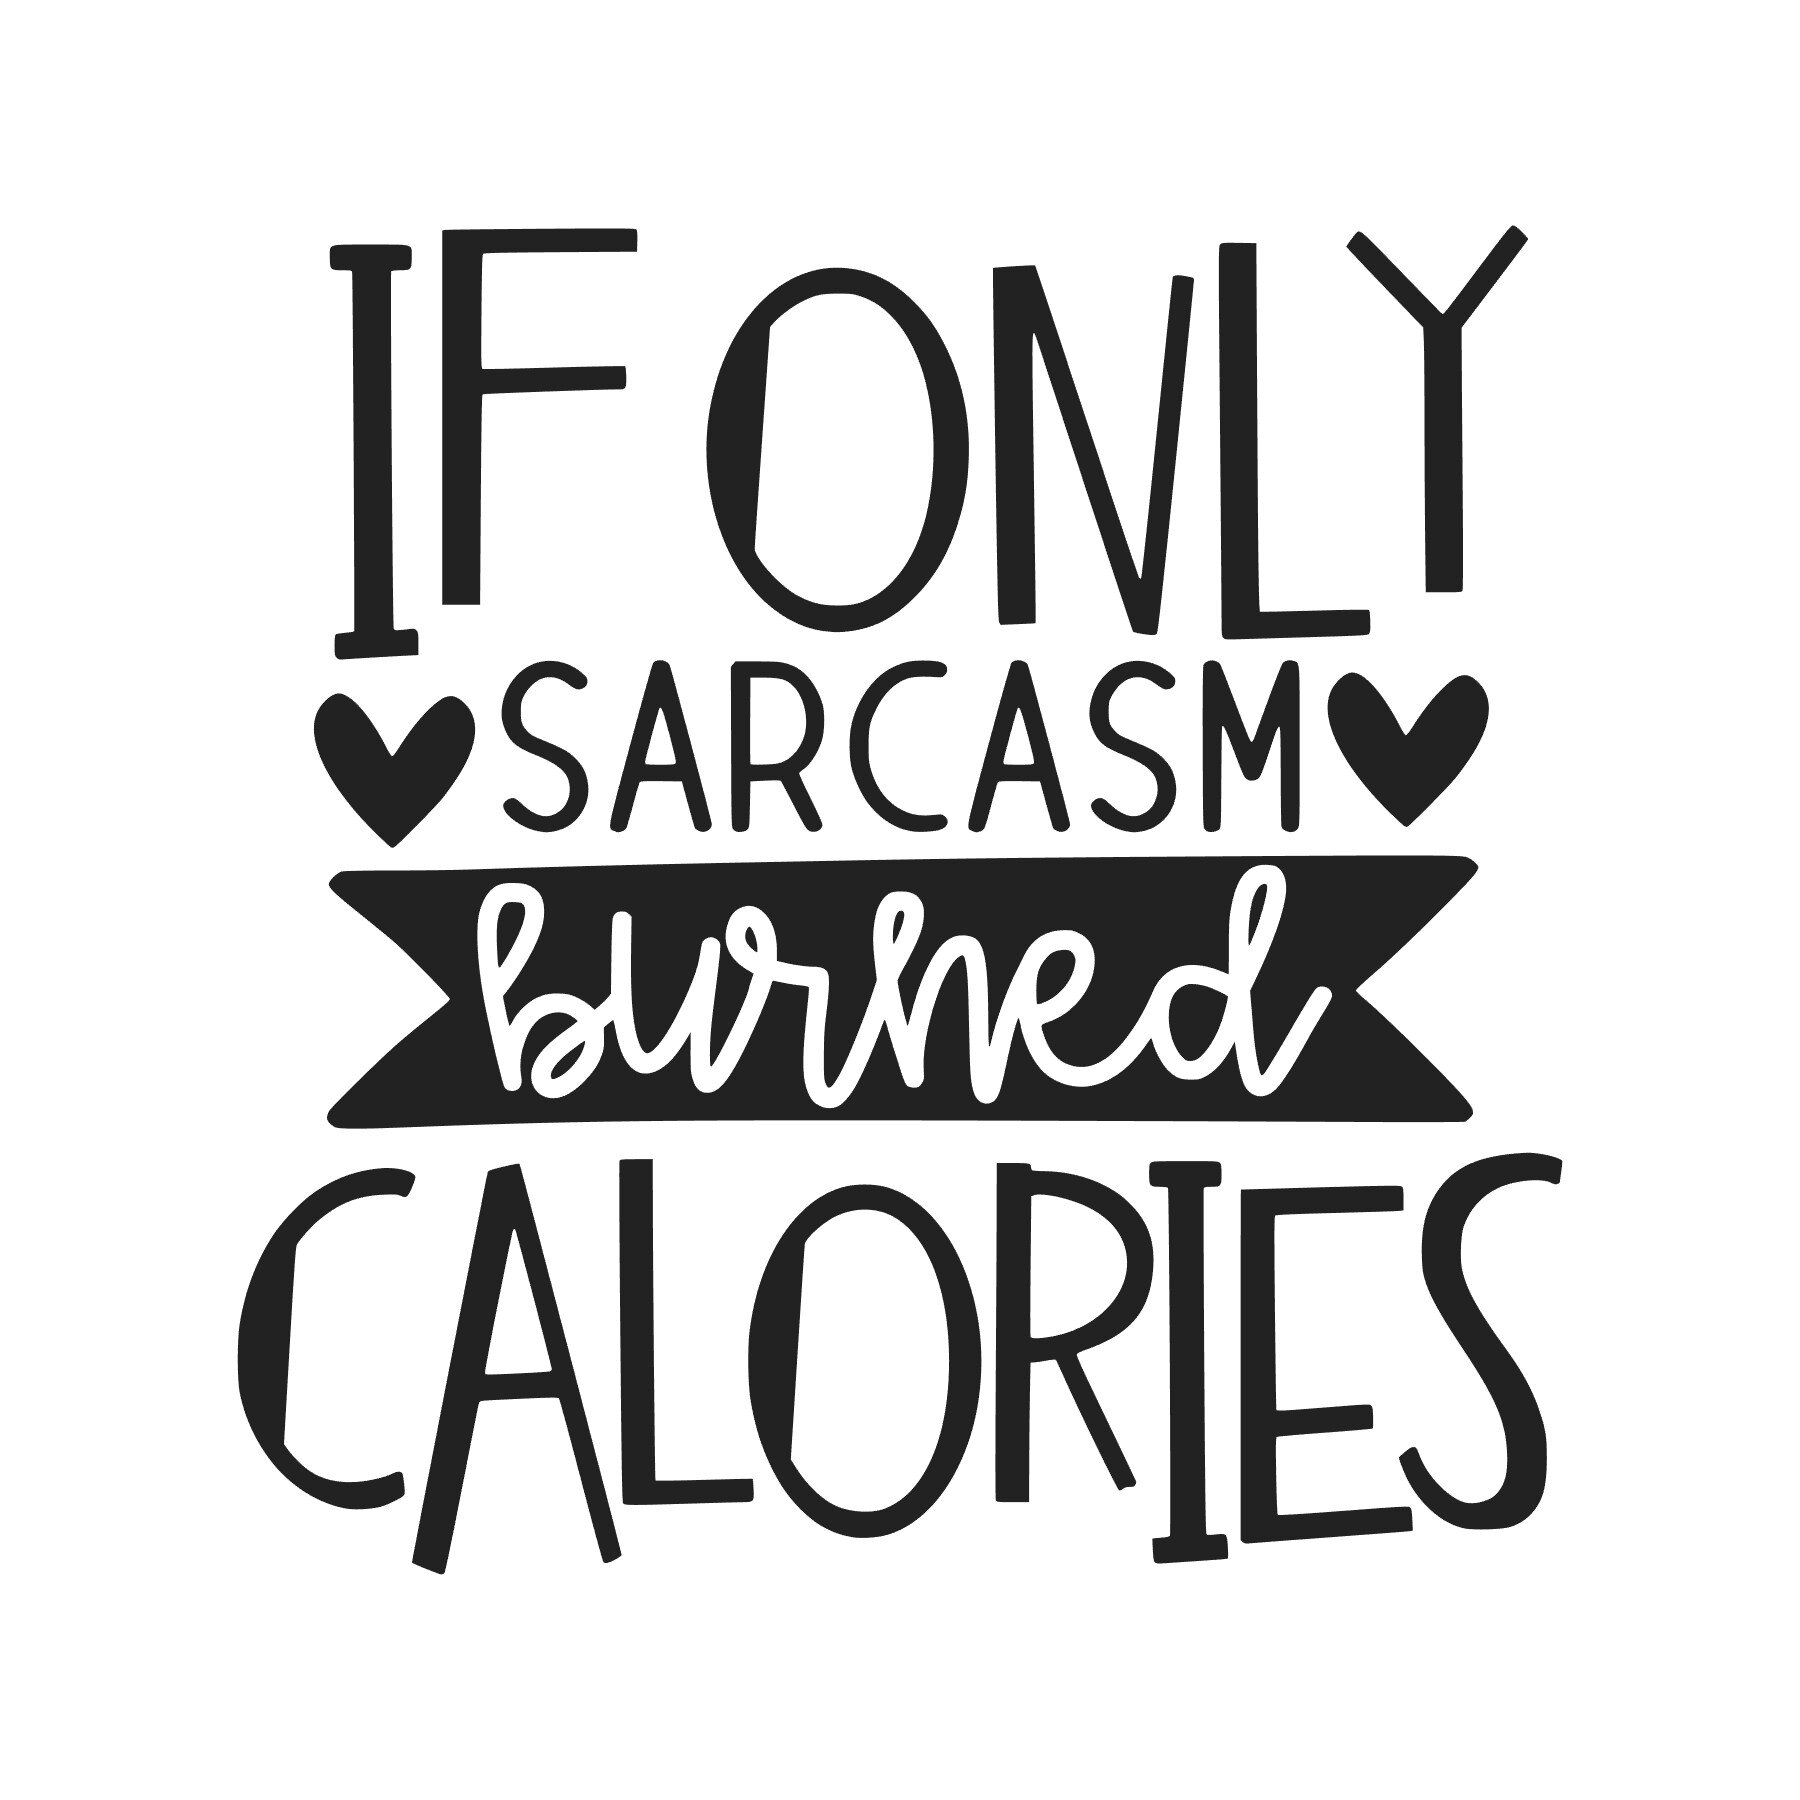 sarcasm burns calories.jpg